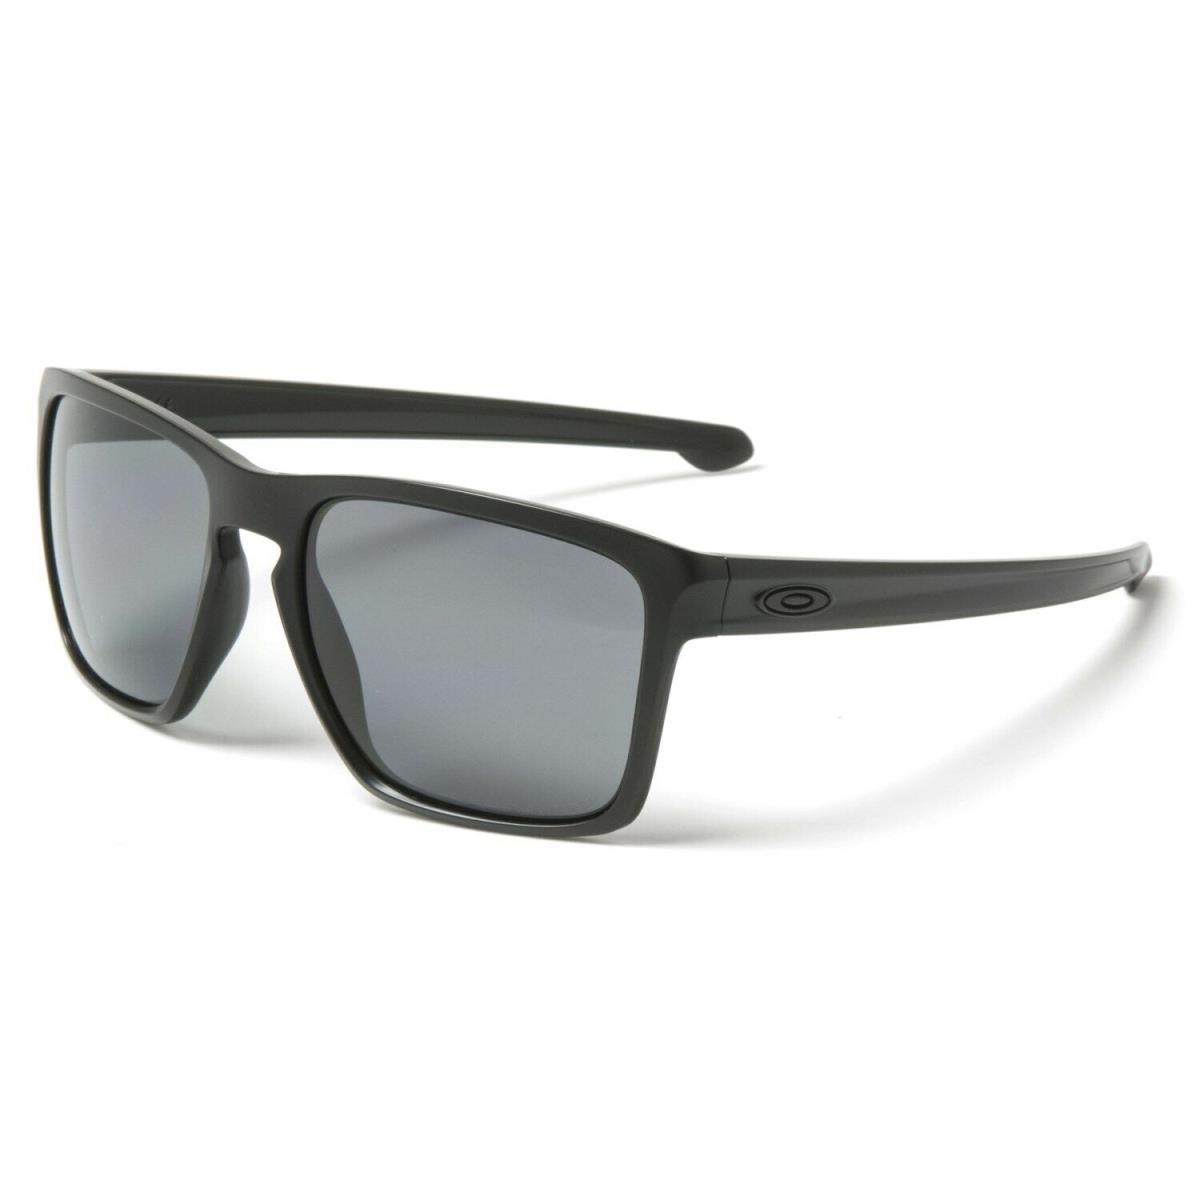 Oakley sunglasses Sliver - Multicolor Frame 0